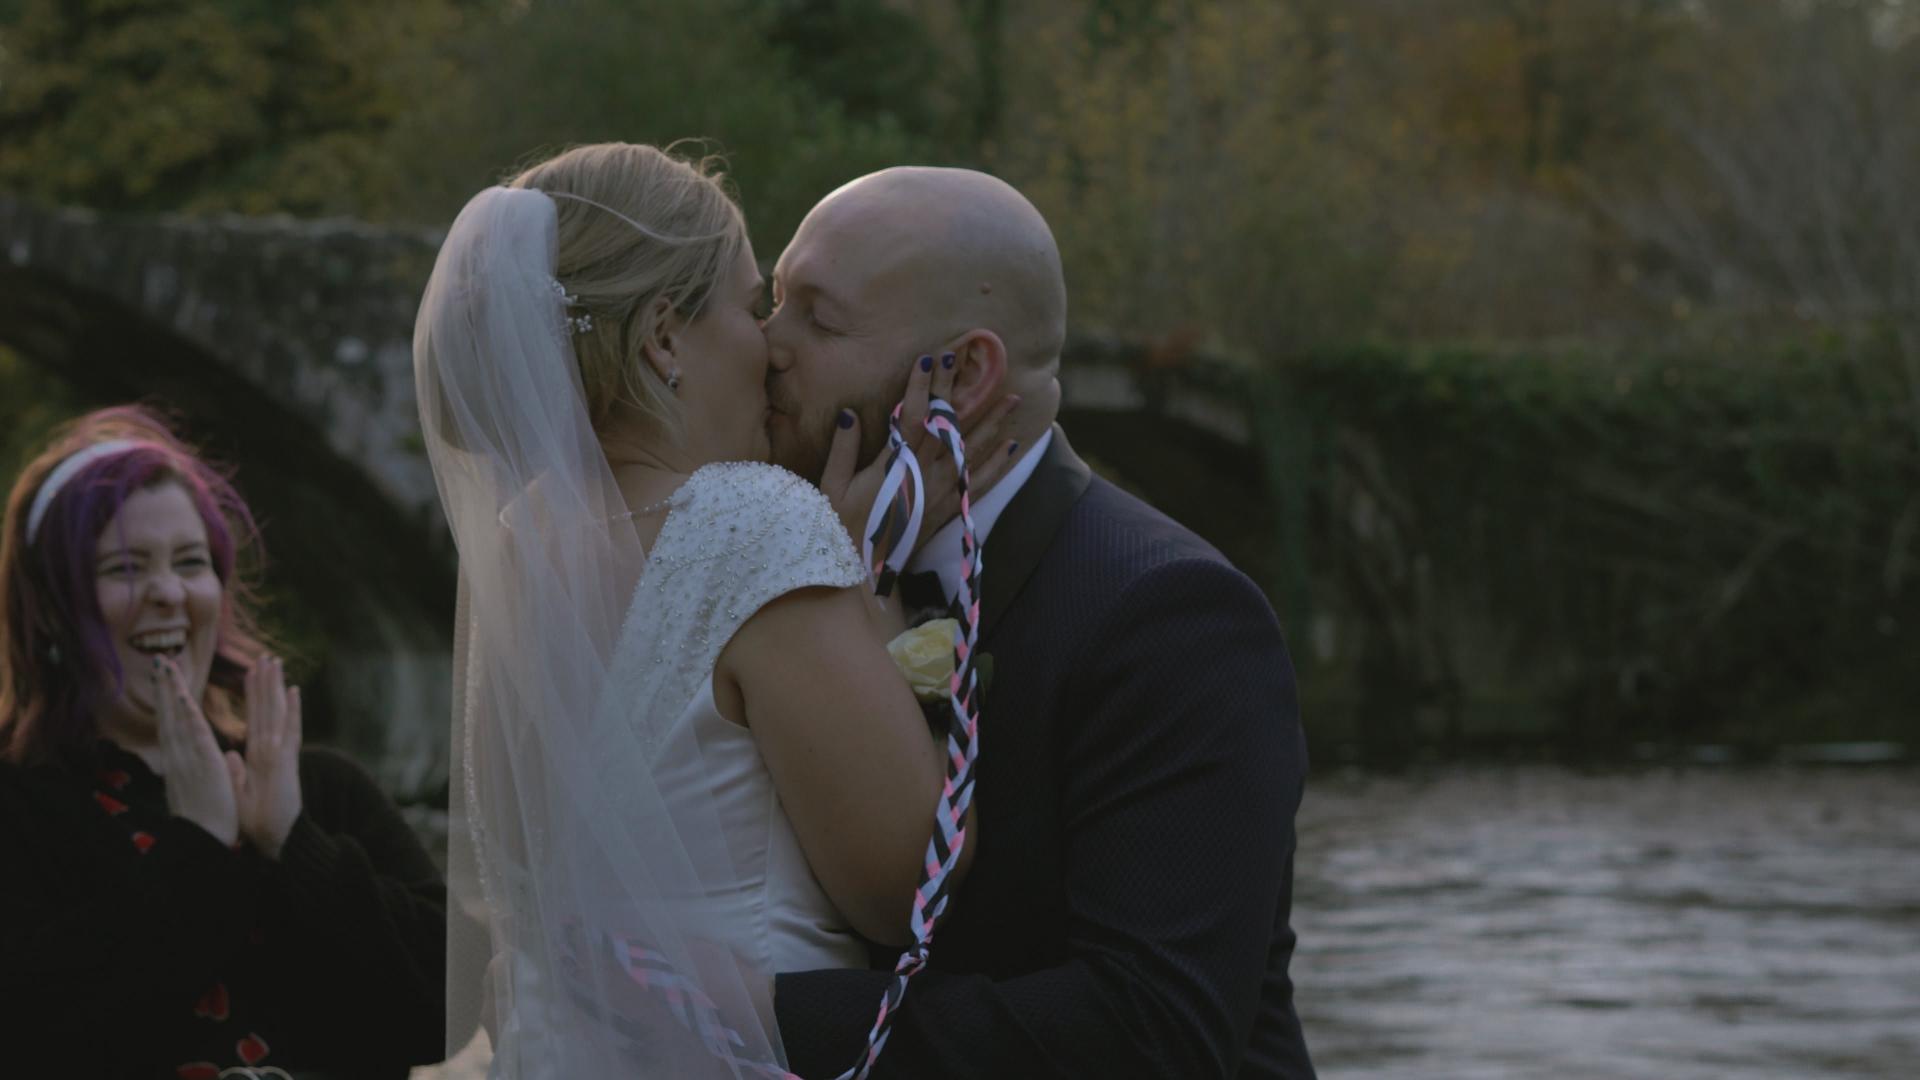 sunkissed ceremonies outdoor elopement videographer